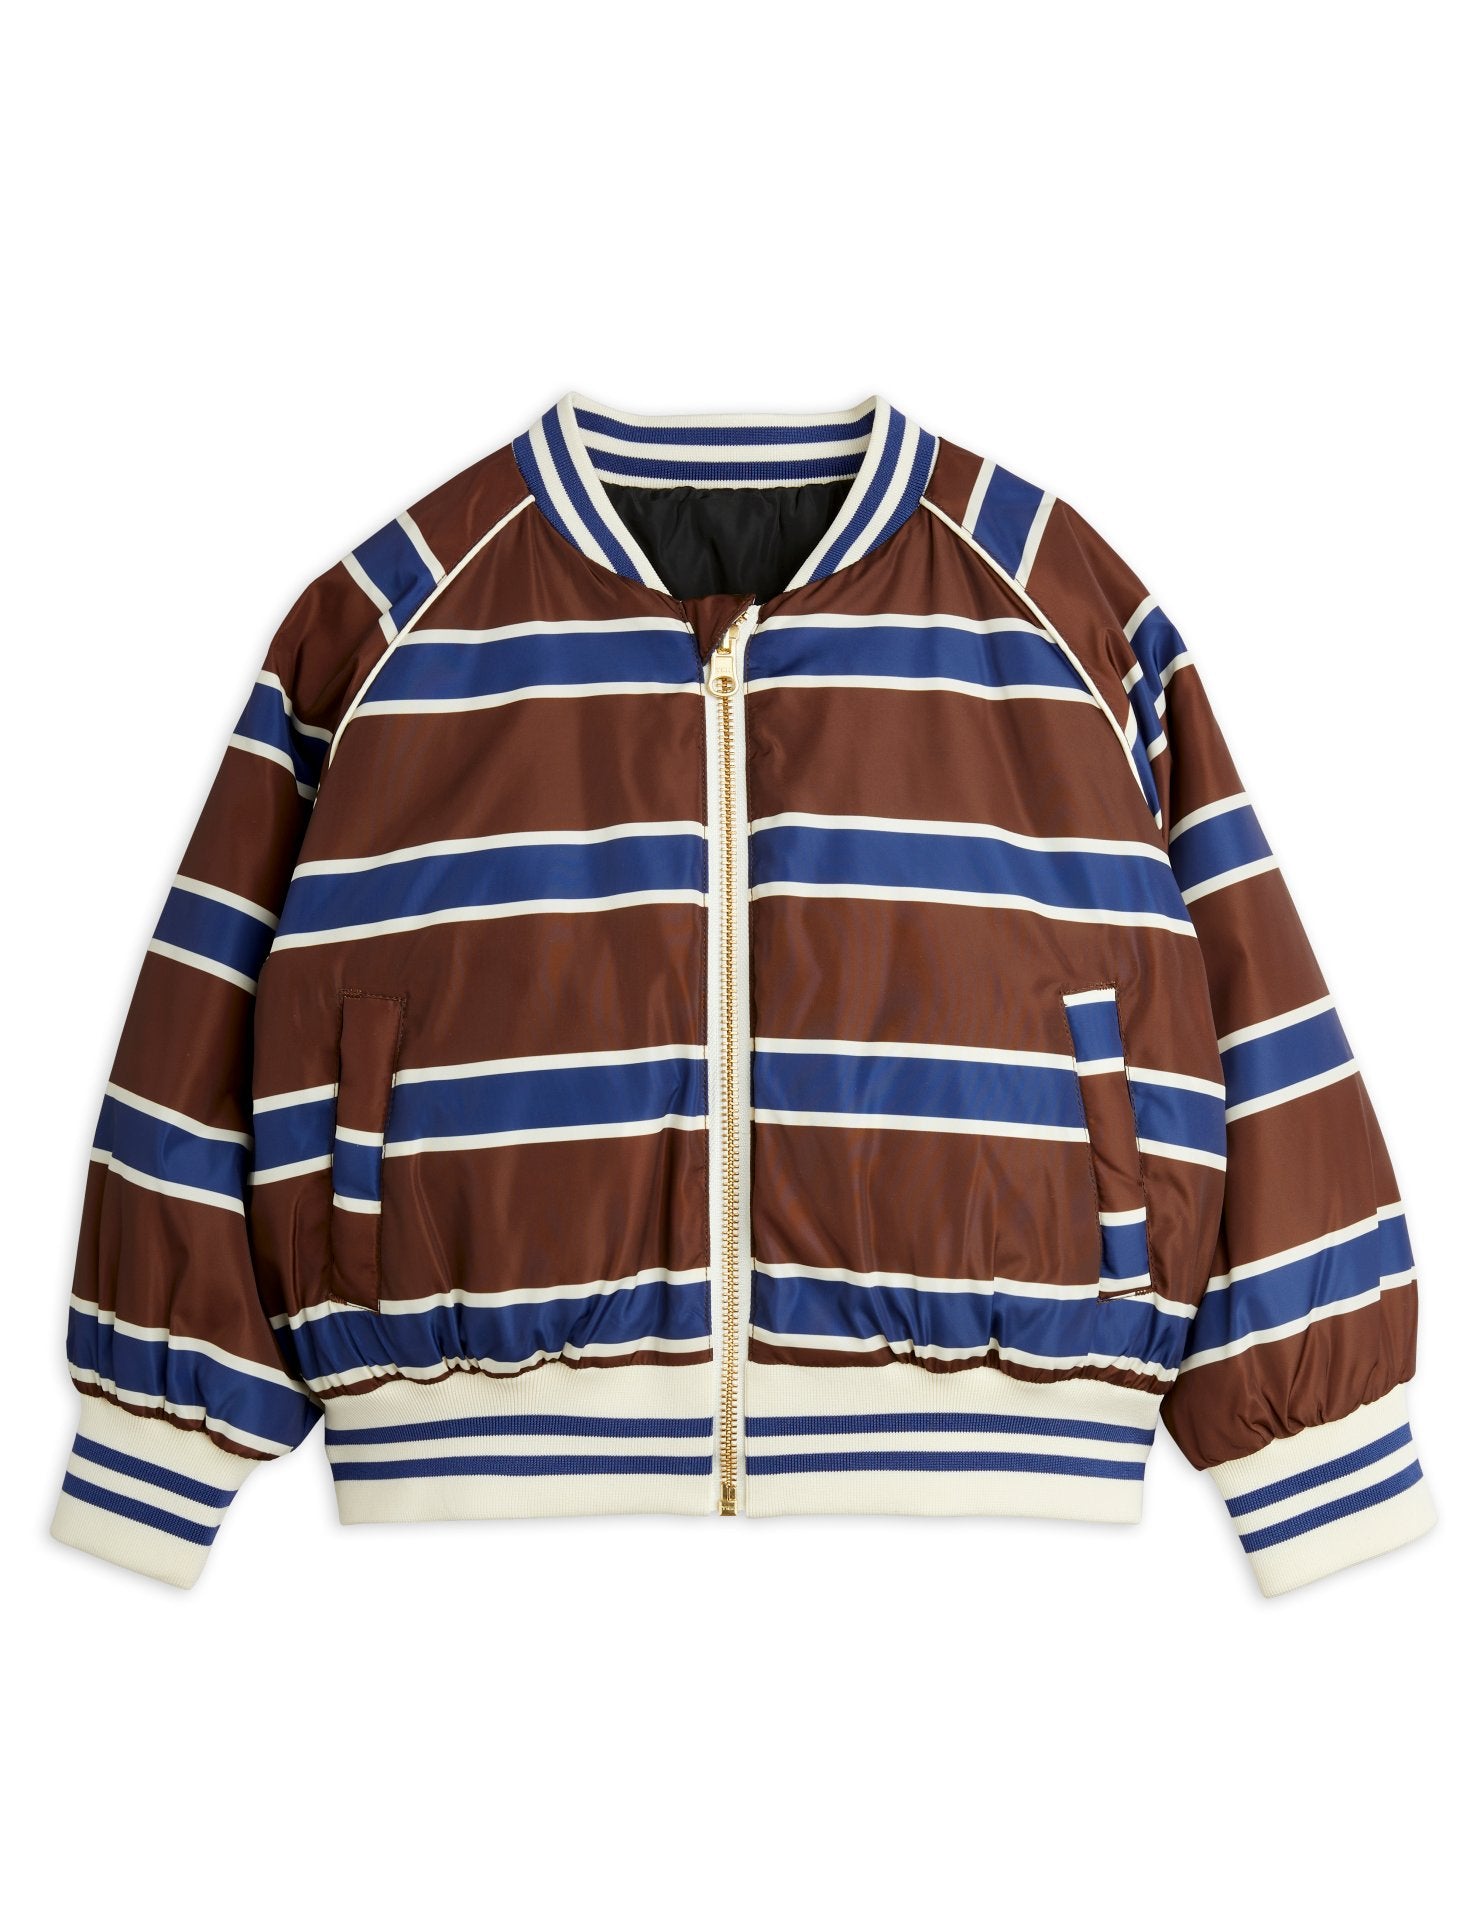 MINI RODINI / Stripe reversible baseball jacket